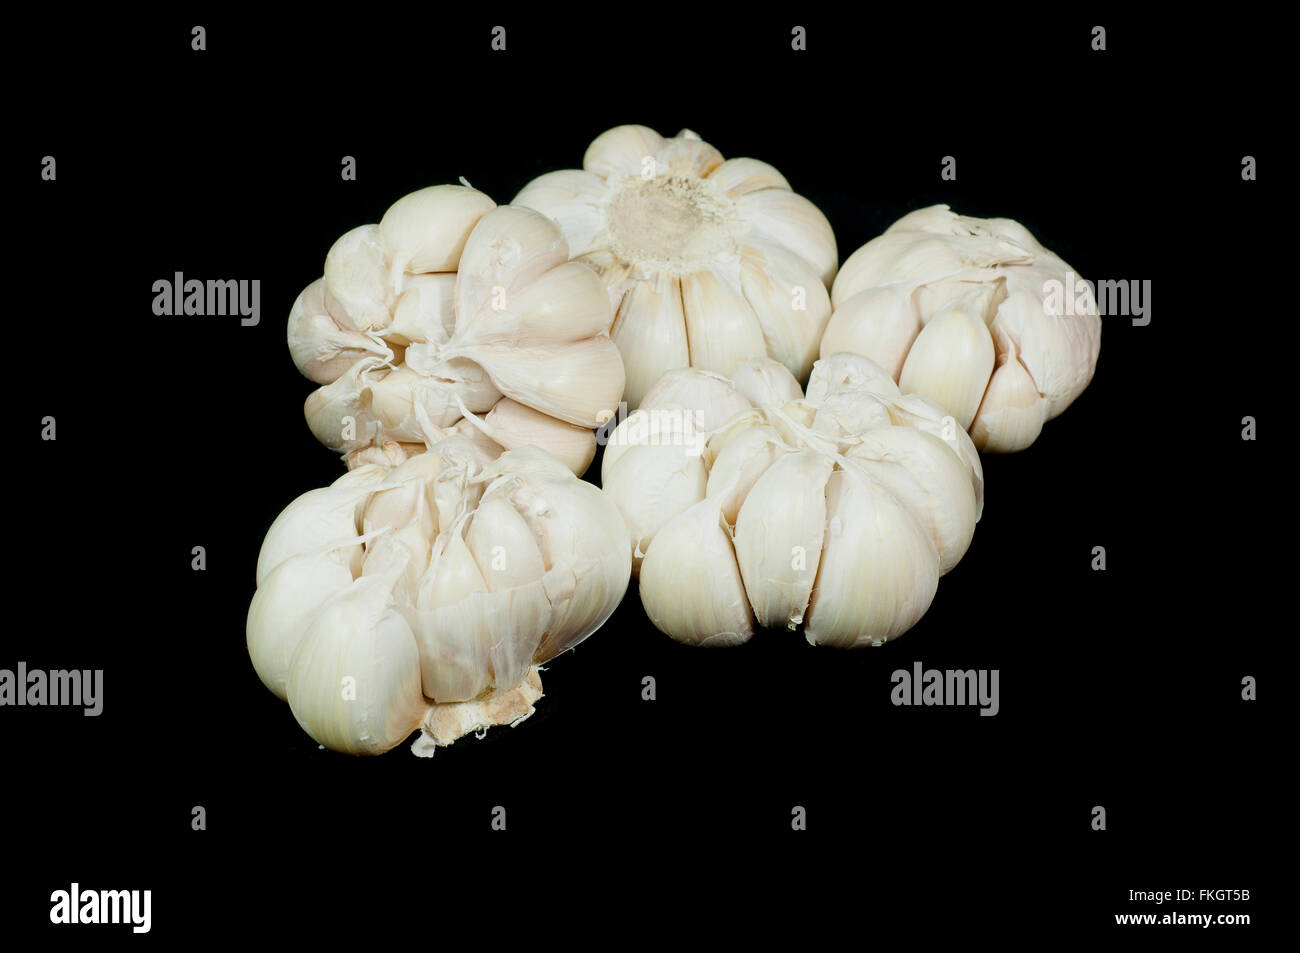 Garlic isolated on black background. Stock Photo